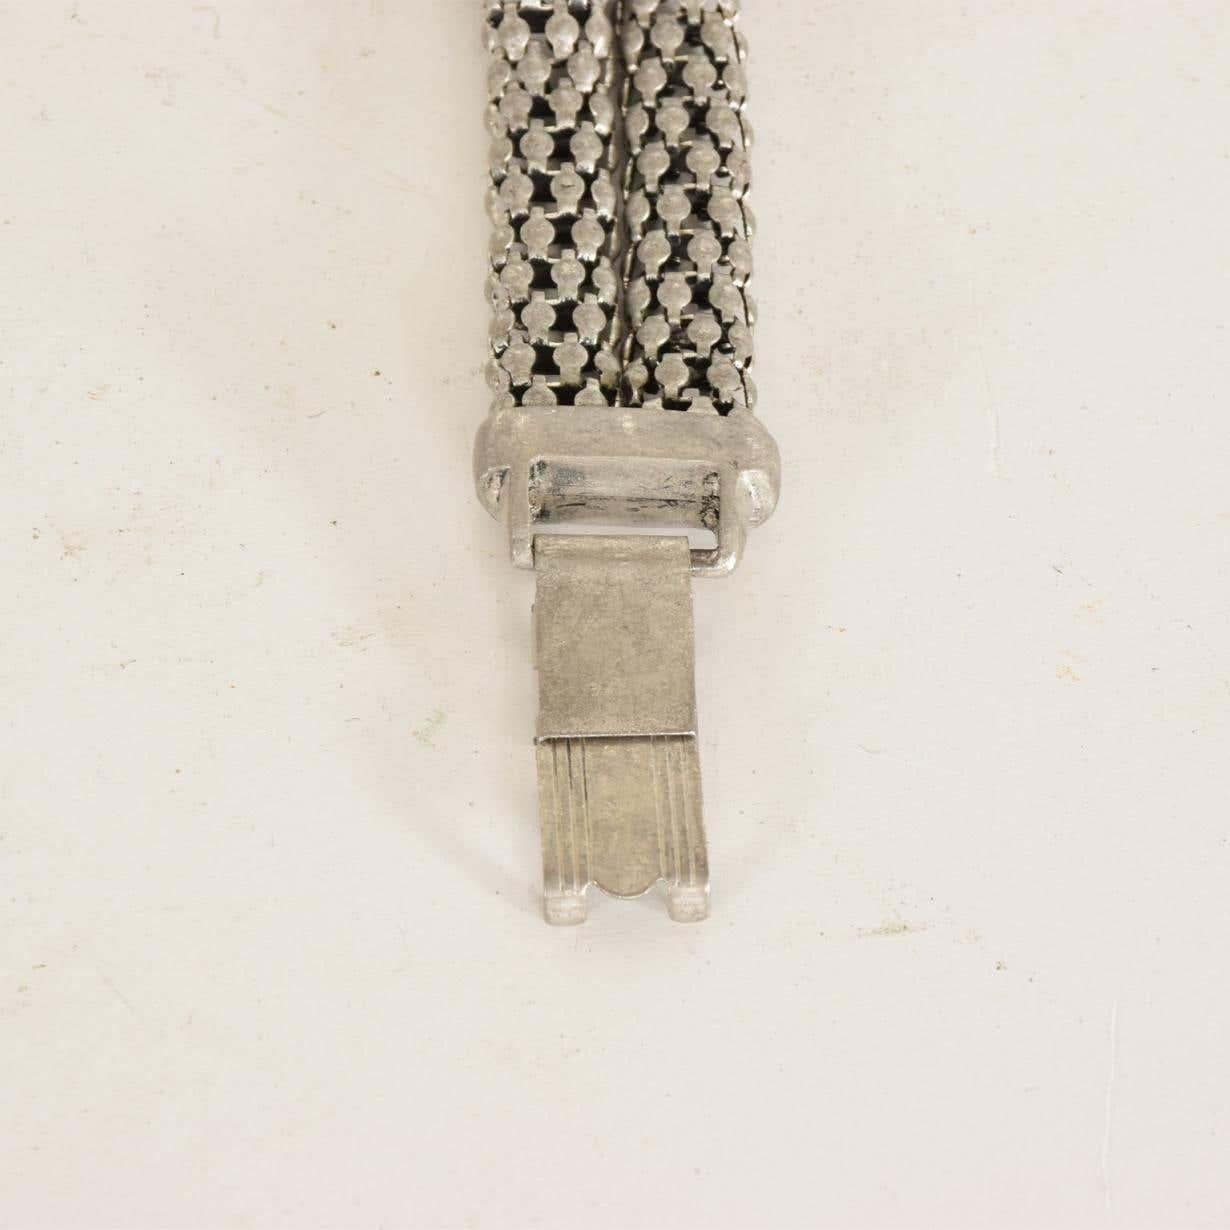 Bracelet sculptural en aluminium et câble français torsadé, d'époque Art Déco, années 1940.
Fabuleux nœud central sculptural de conception moderniste à double rangée de bandes larges
Dans le style du designer contemporain David Yurman, des câbles